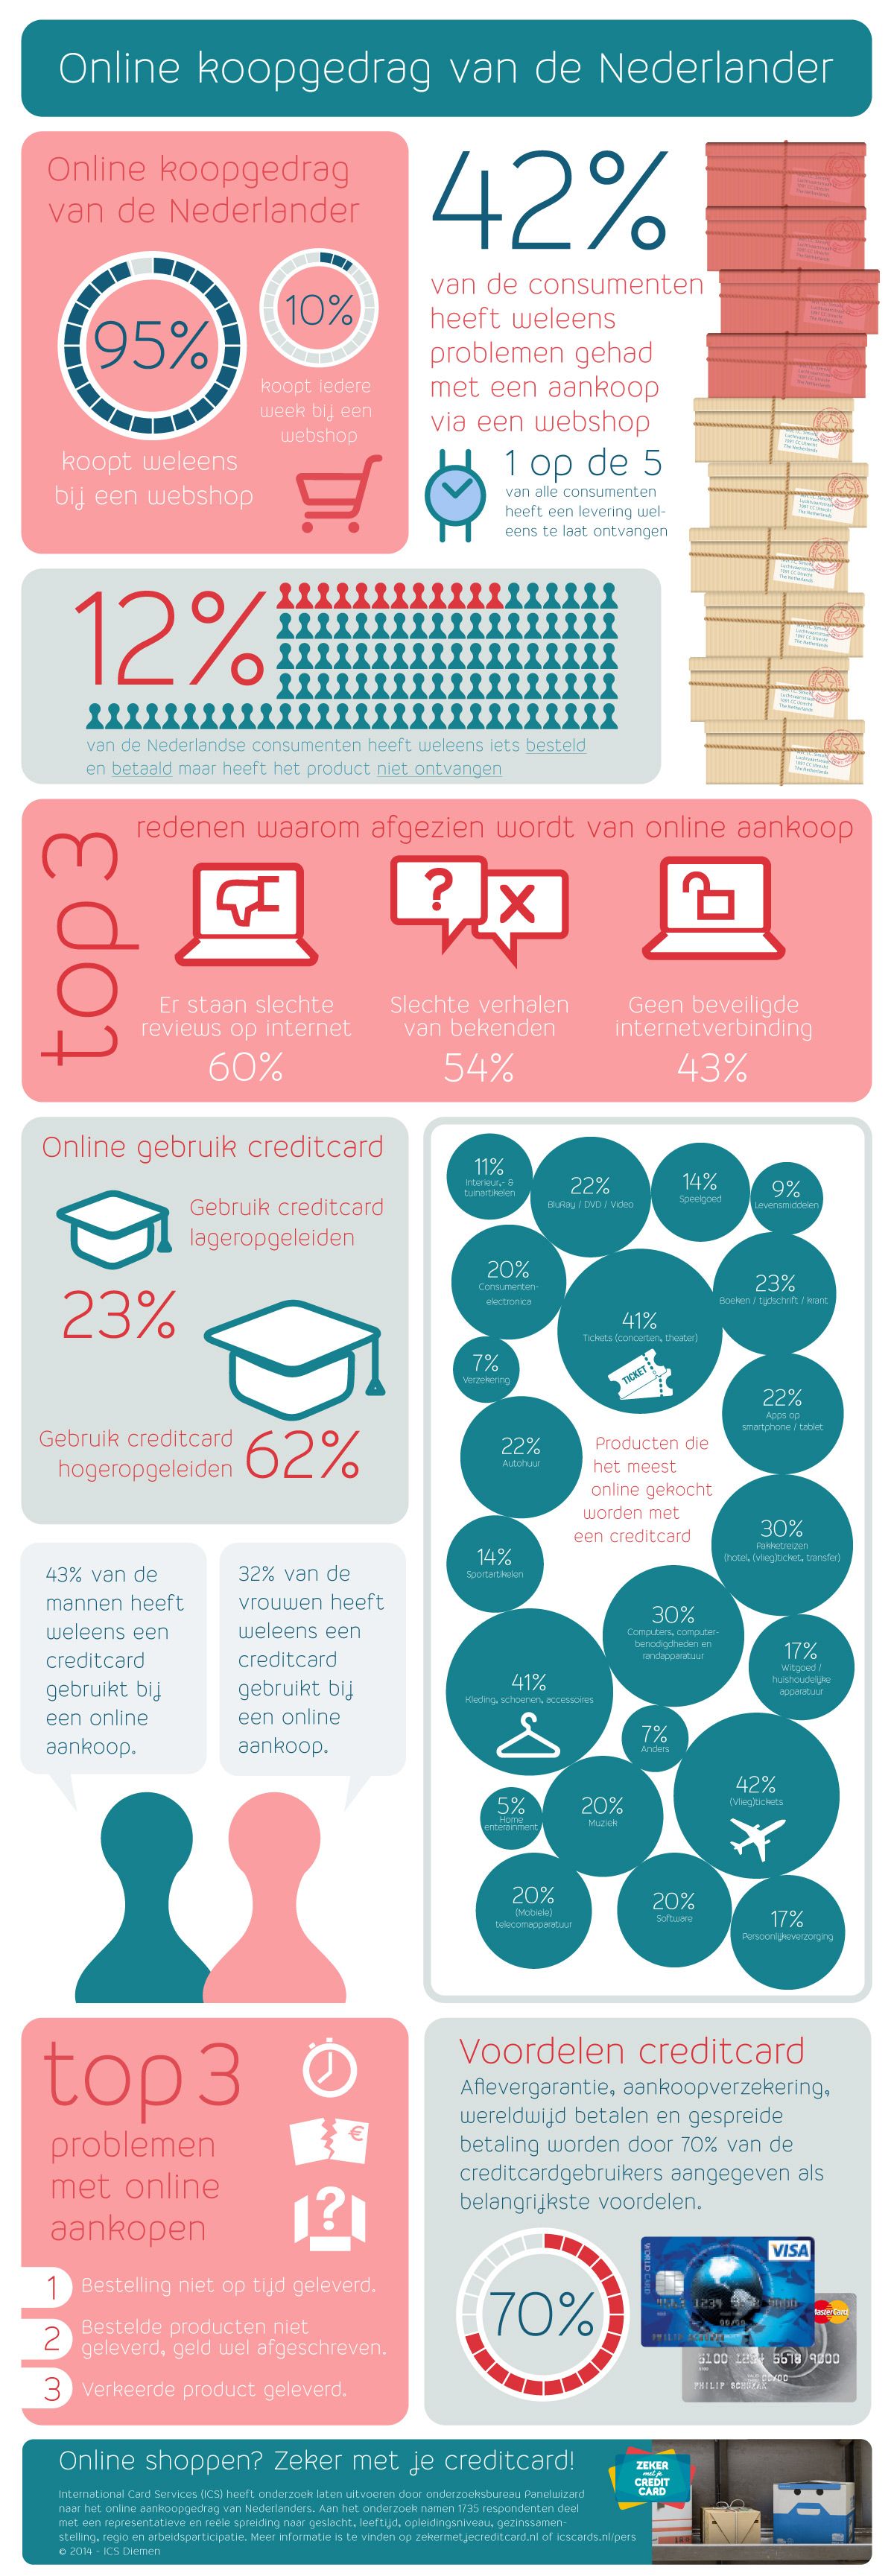 Infographic onderzoek ICS